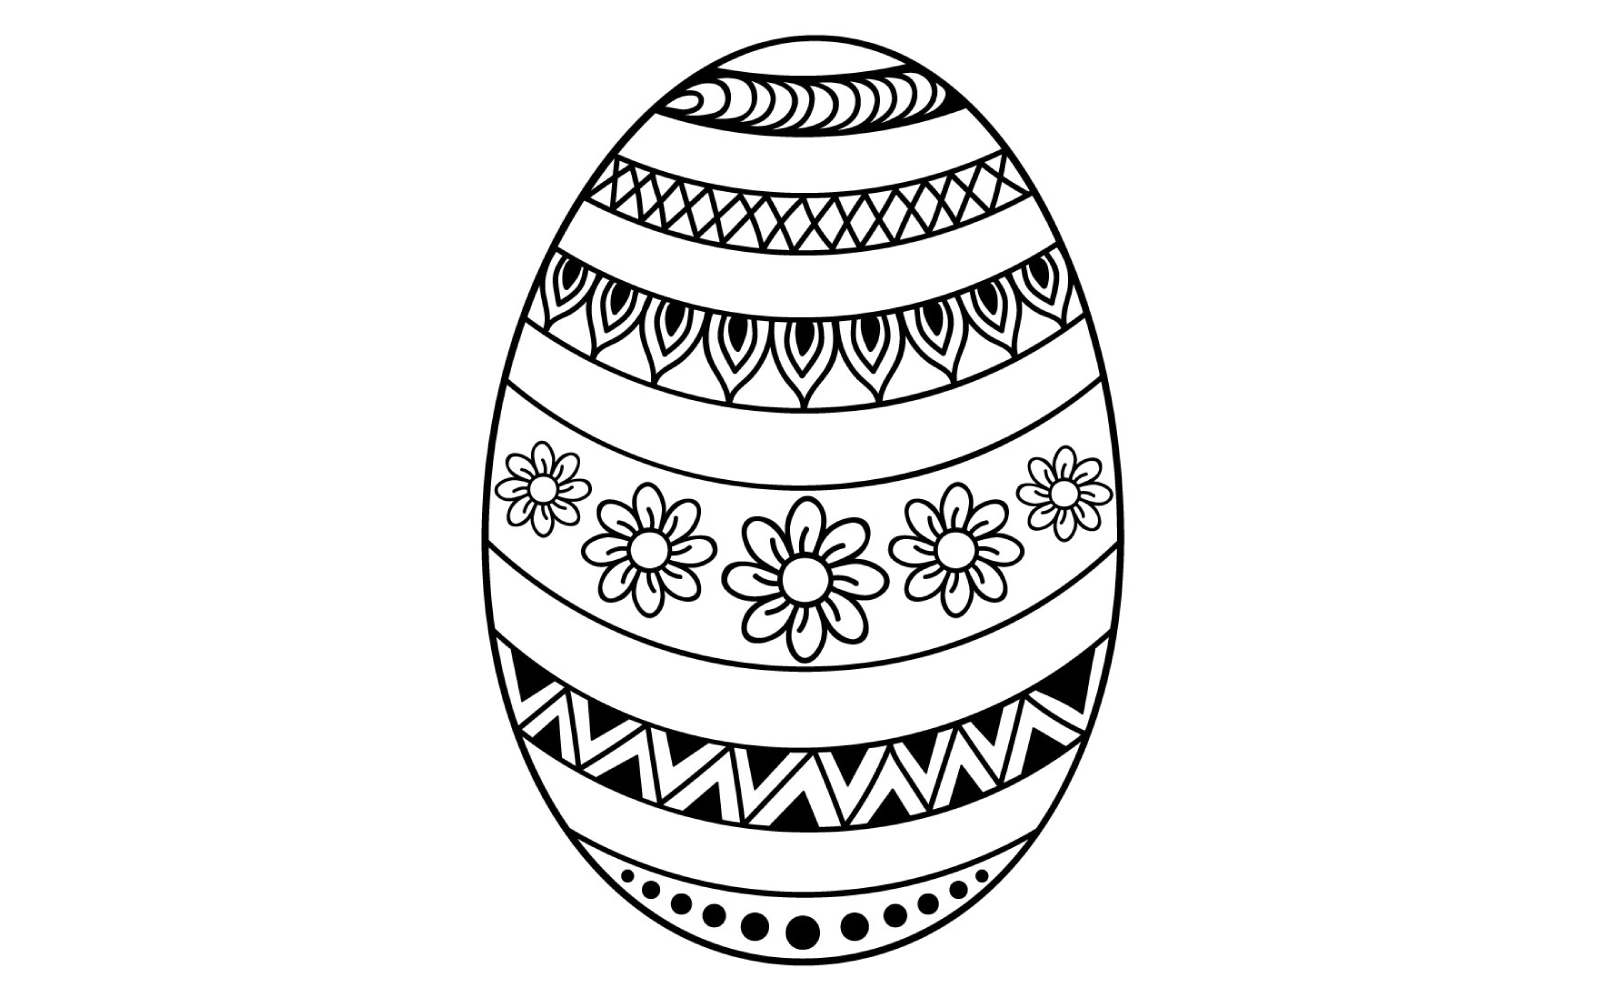 Decorative Easter Egg Illustrations